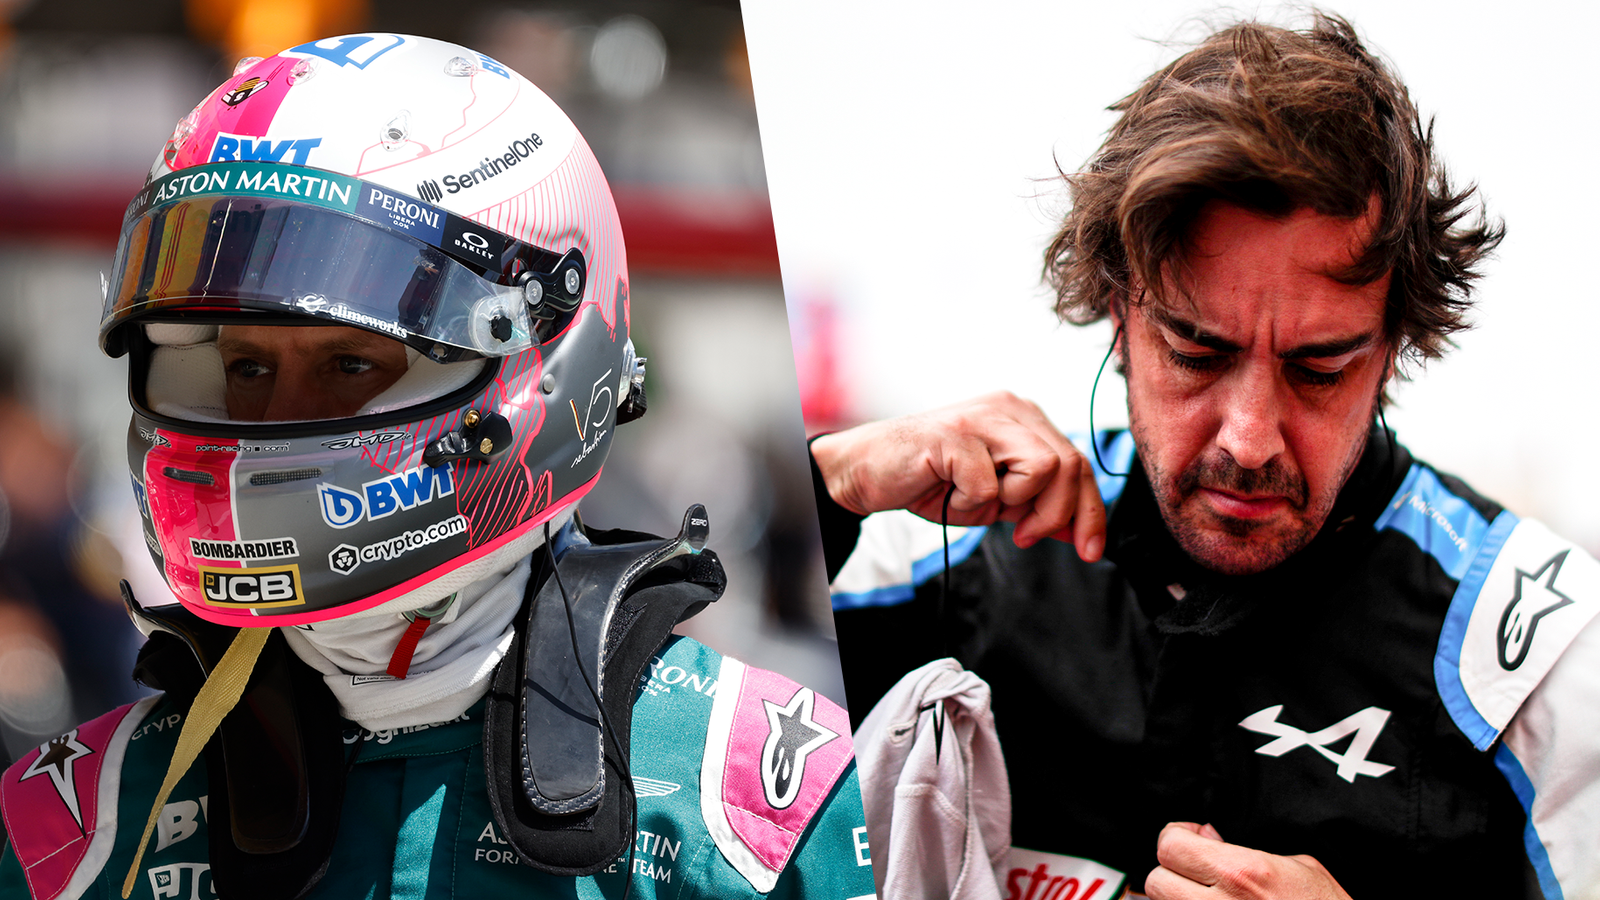 Großer Preis von Österreich: Fernando Alonso tobt nach Fouling von Sebastian Vettel weiter und fordert härtere Strafen